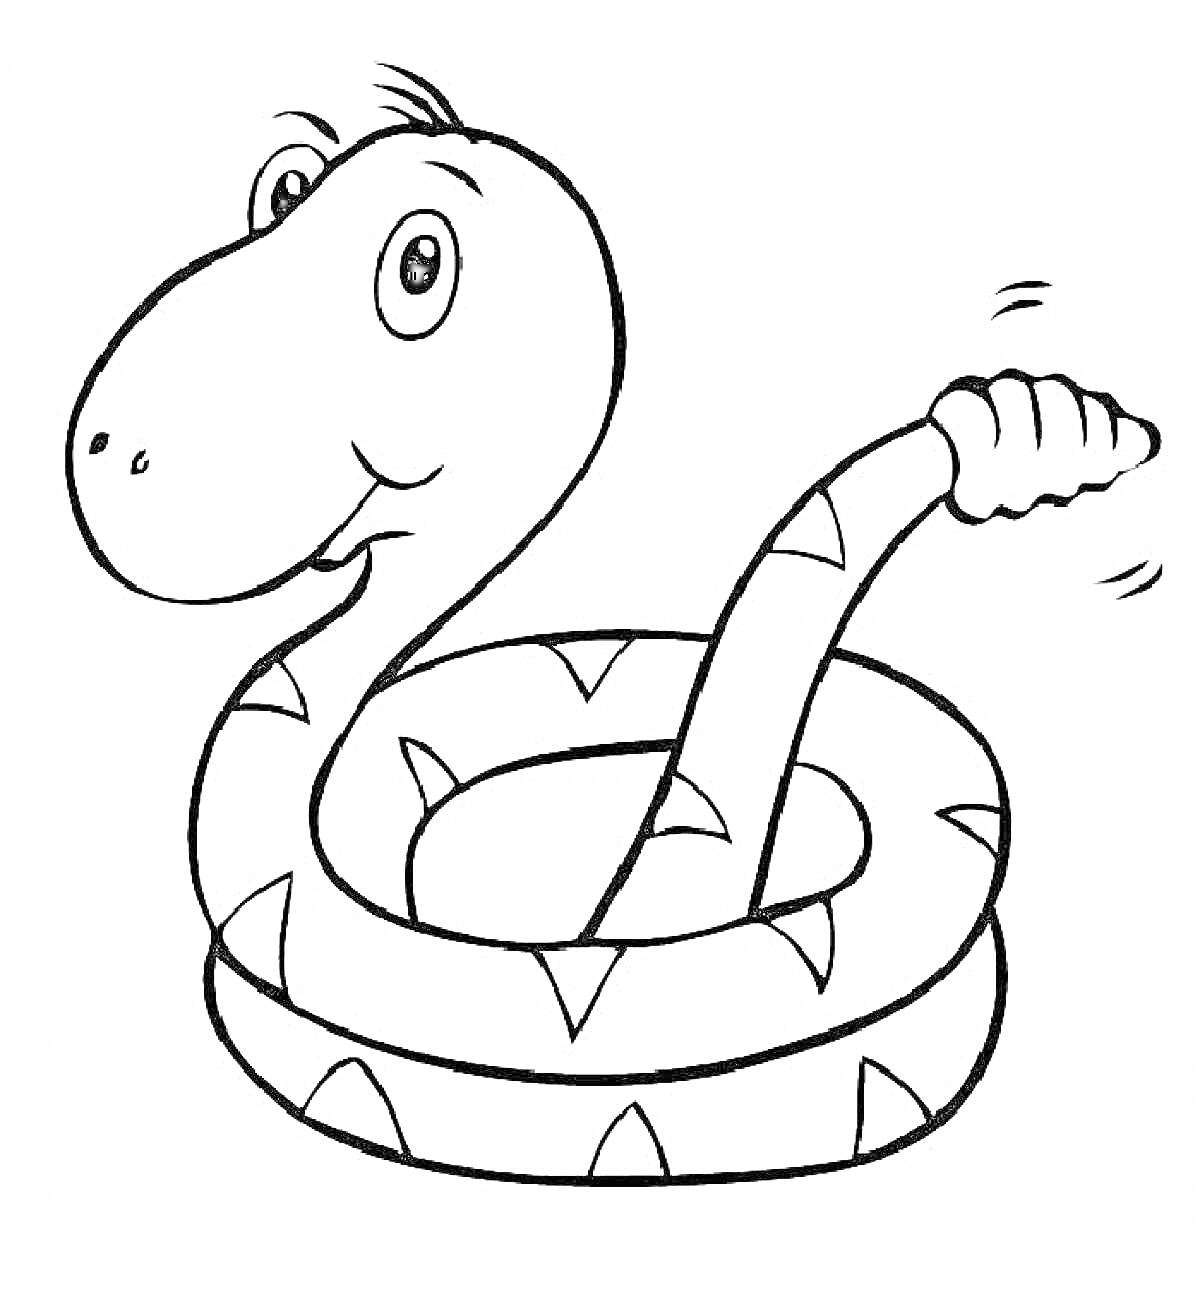 Раскраска Улыбающаяся змея с отмеченным узором и движущимся хвостом